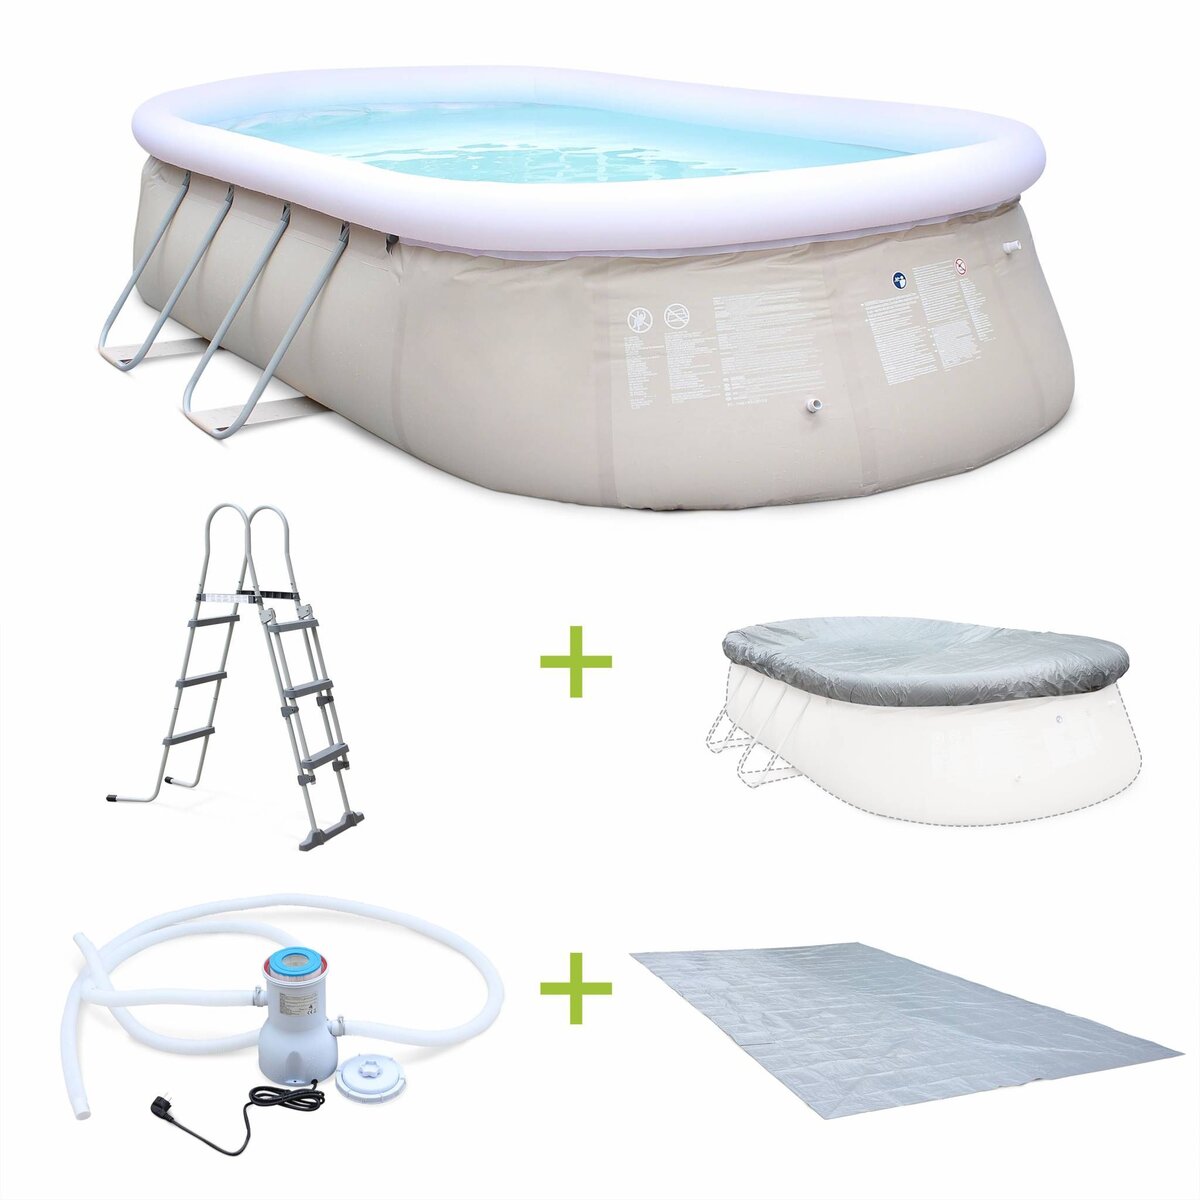 SWEEEK Kit piscine géante complet - Onyx grise - autoportante ovale 5.4x3m avec pompe de filtration. bâche de protection. tapis de sol et échelle. piscine hors sol autostable.